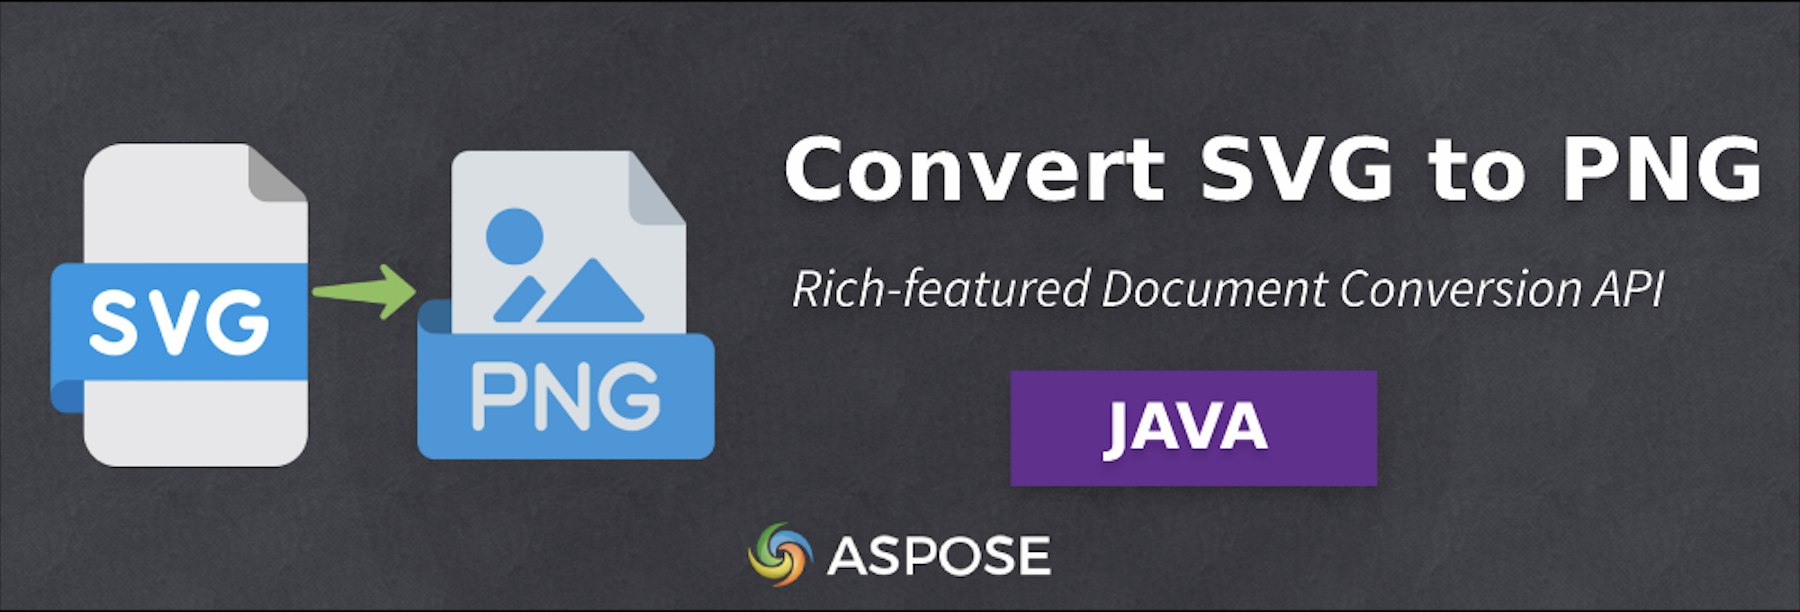 Convertir SVG en PNG en Java - Logiciel de conversion d'images